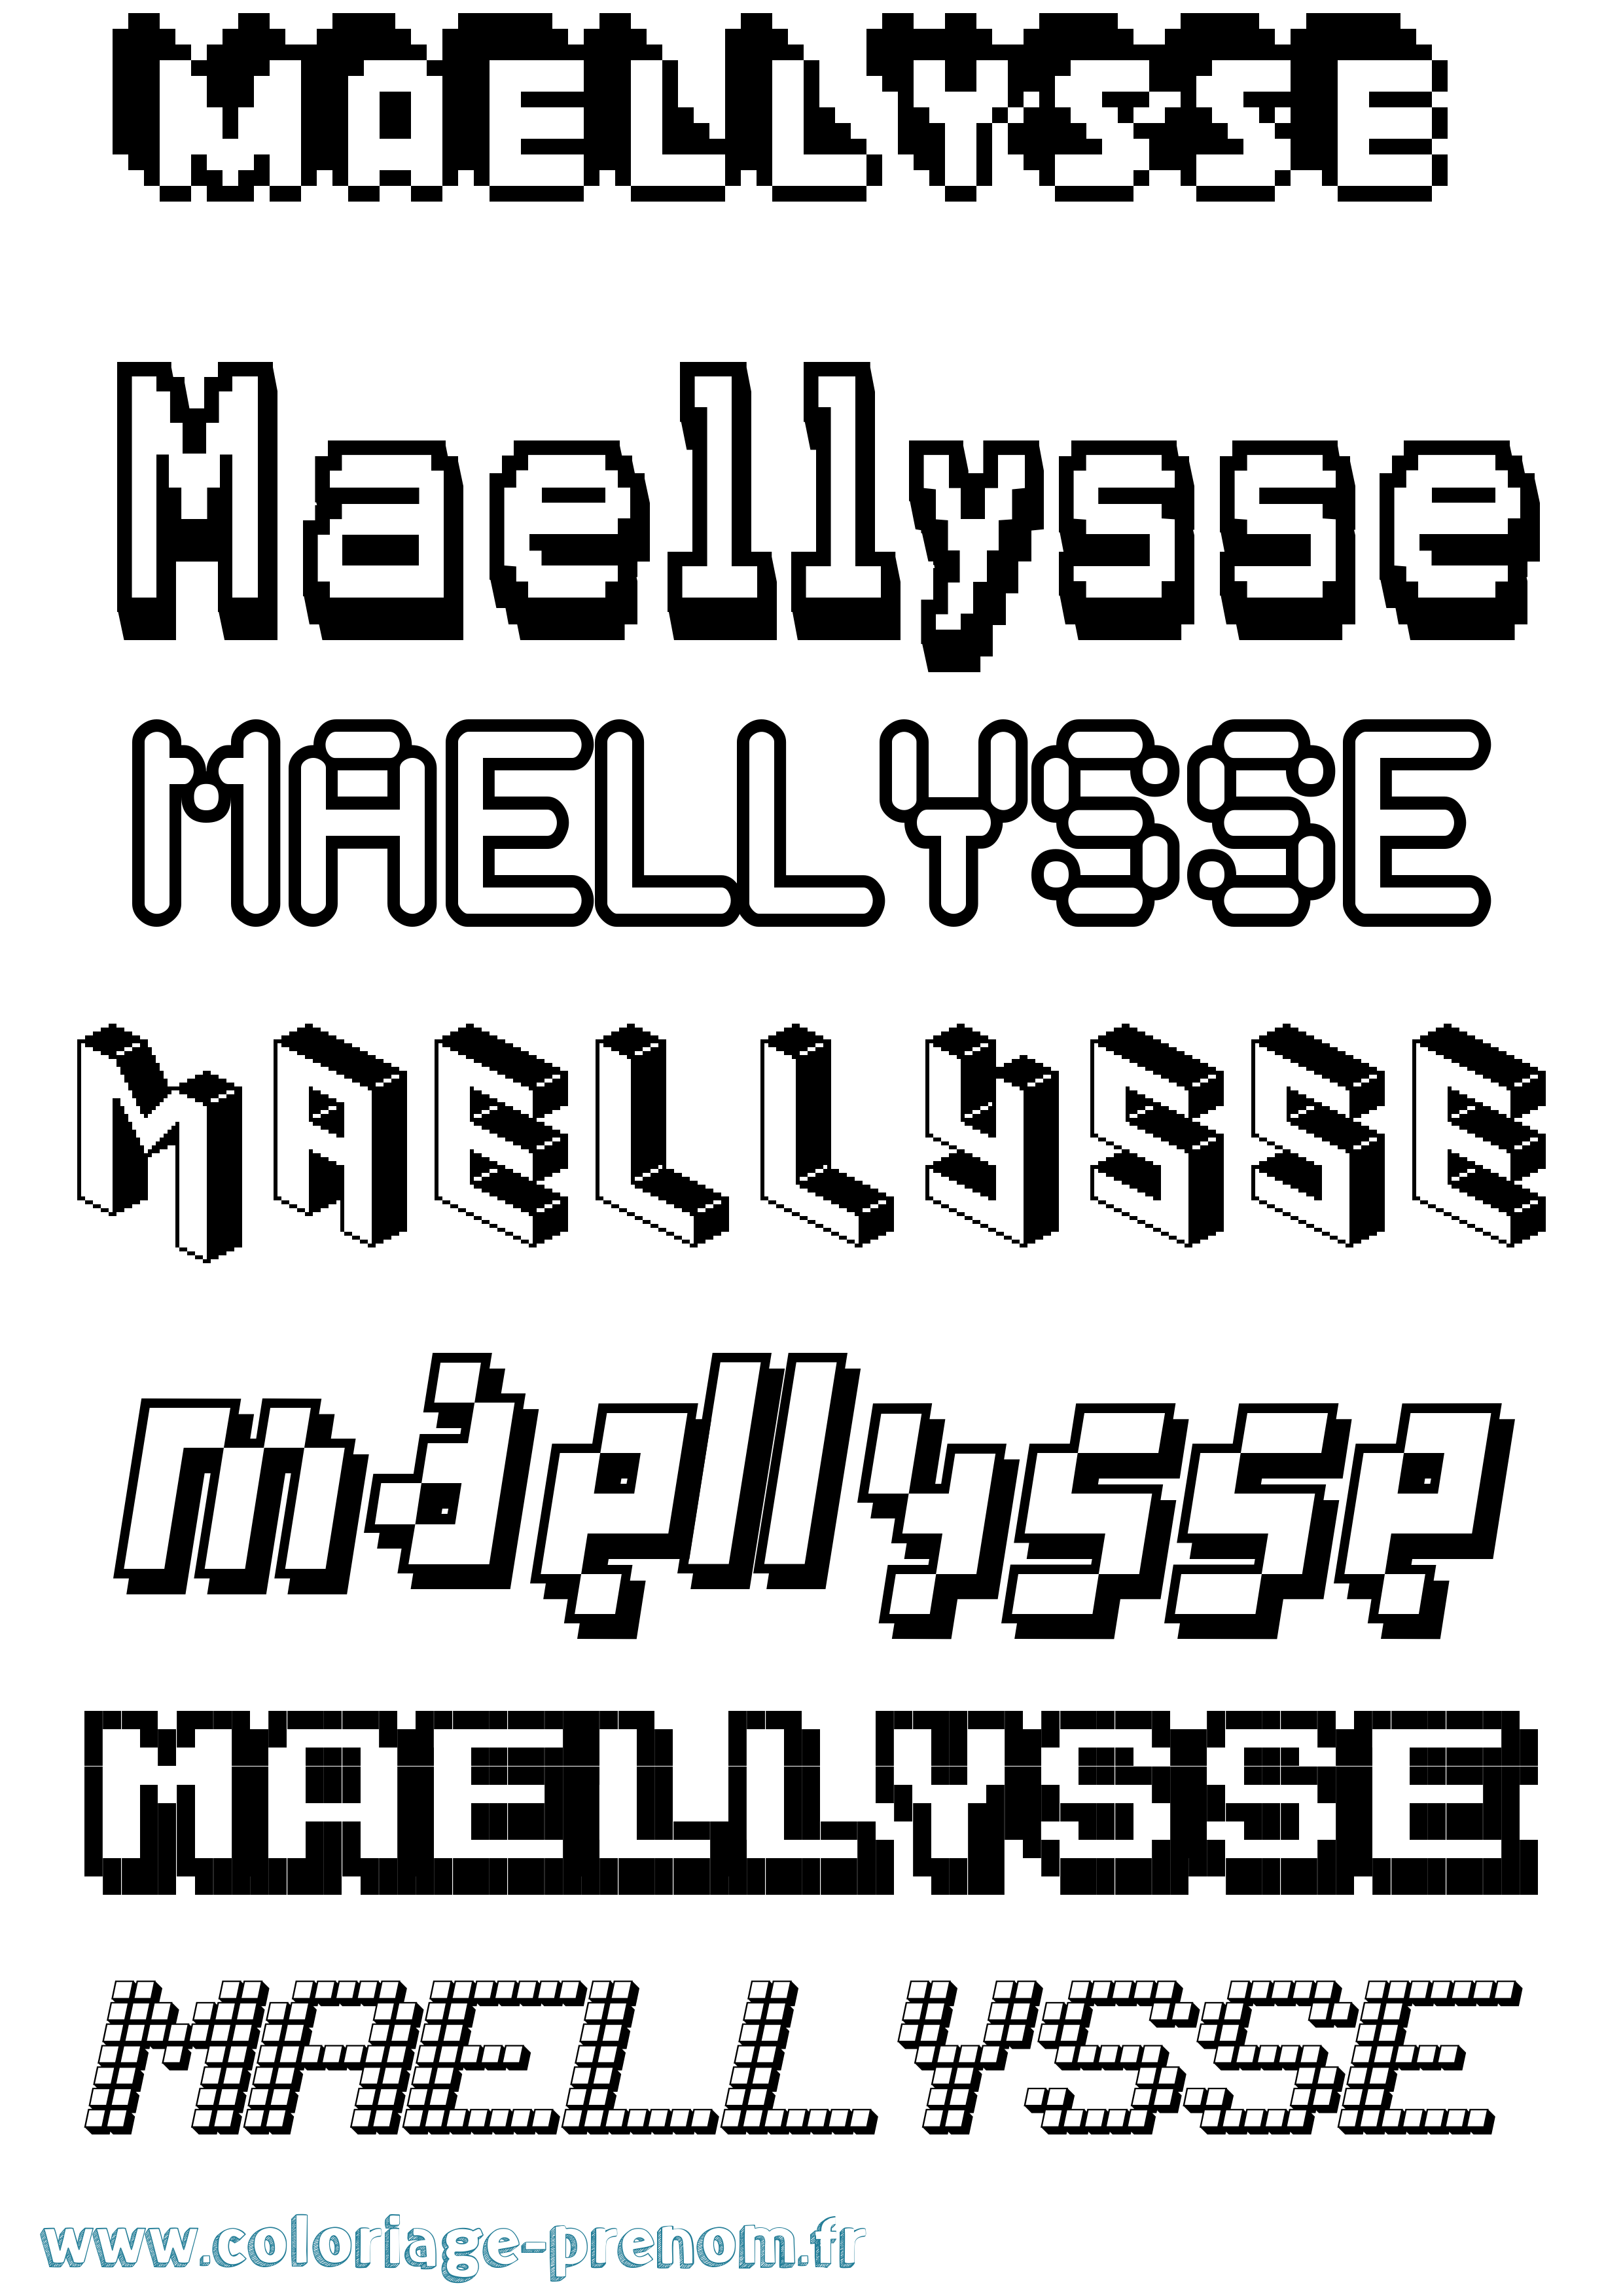 Coloriage prénom Maellysse Pixel